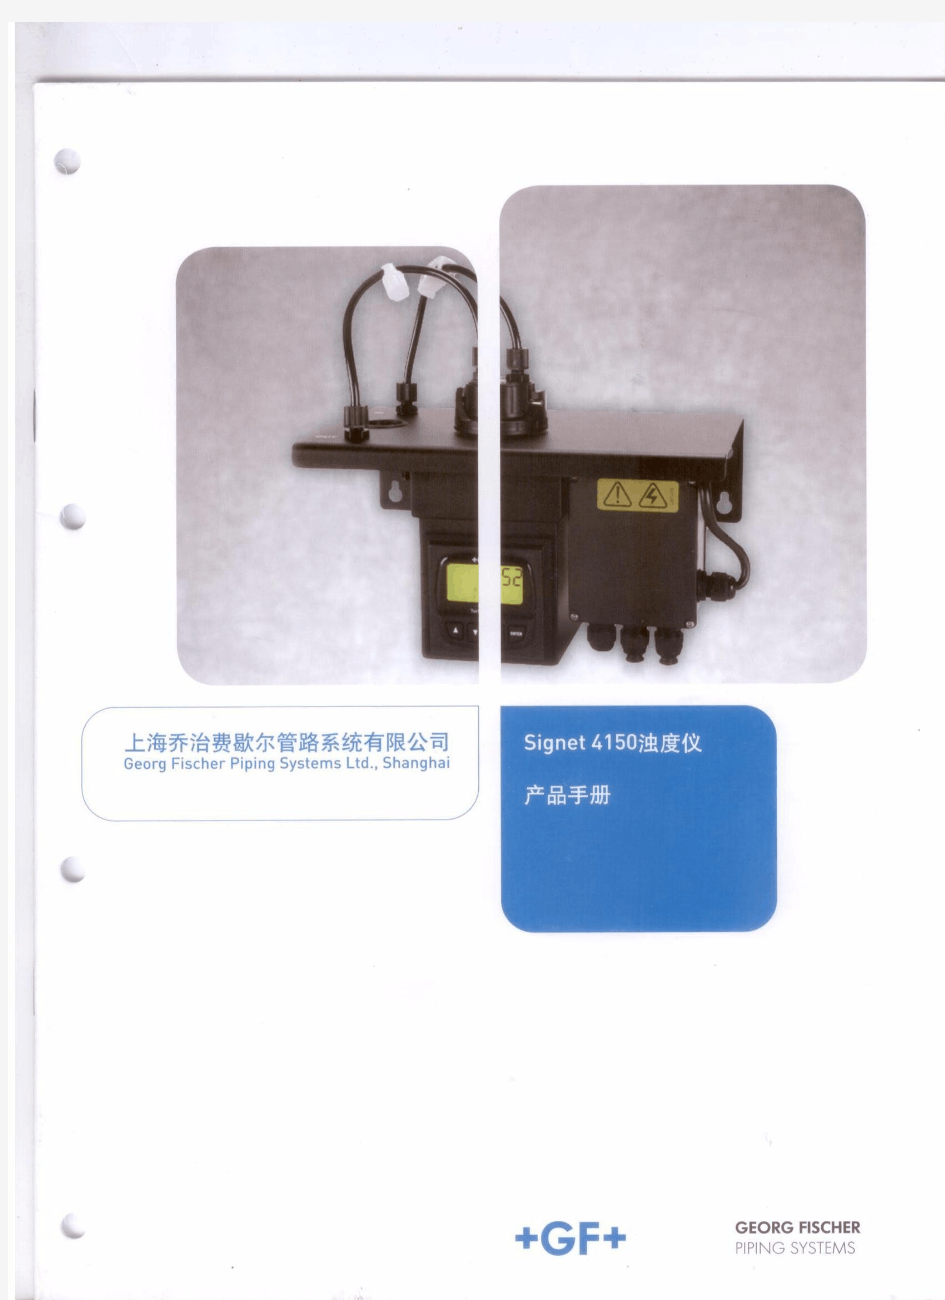 GF仪表Signet 4150浊度仪 产品手册